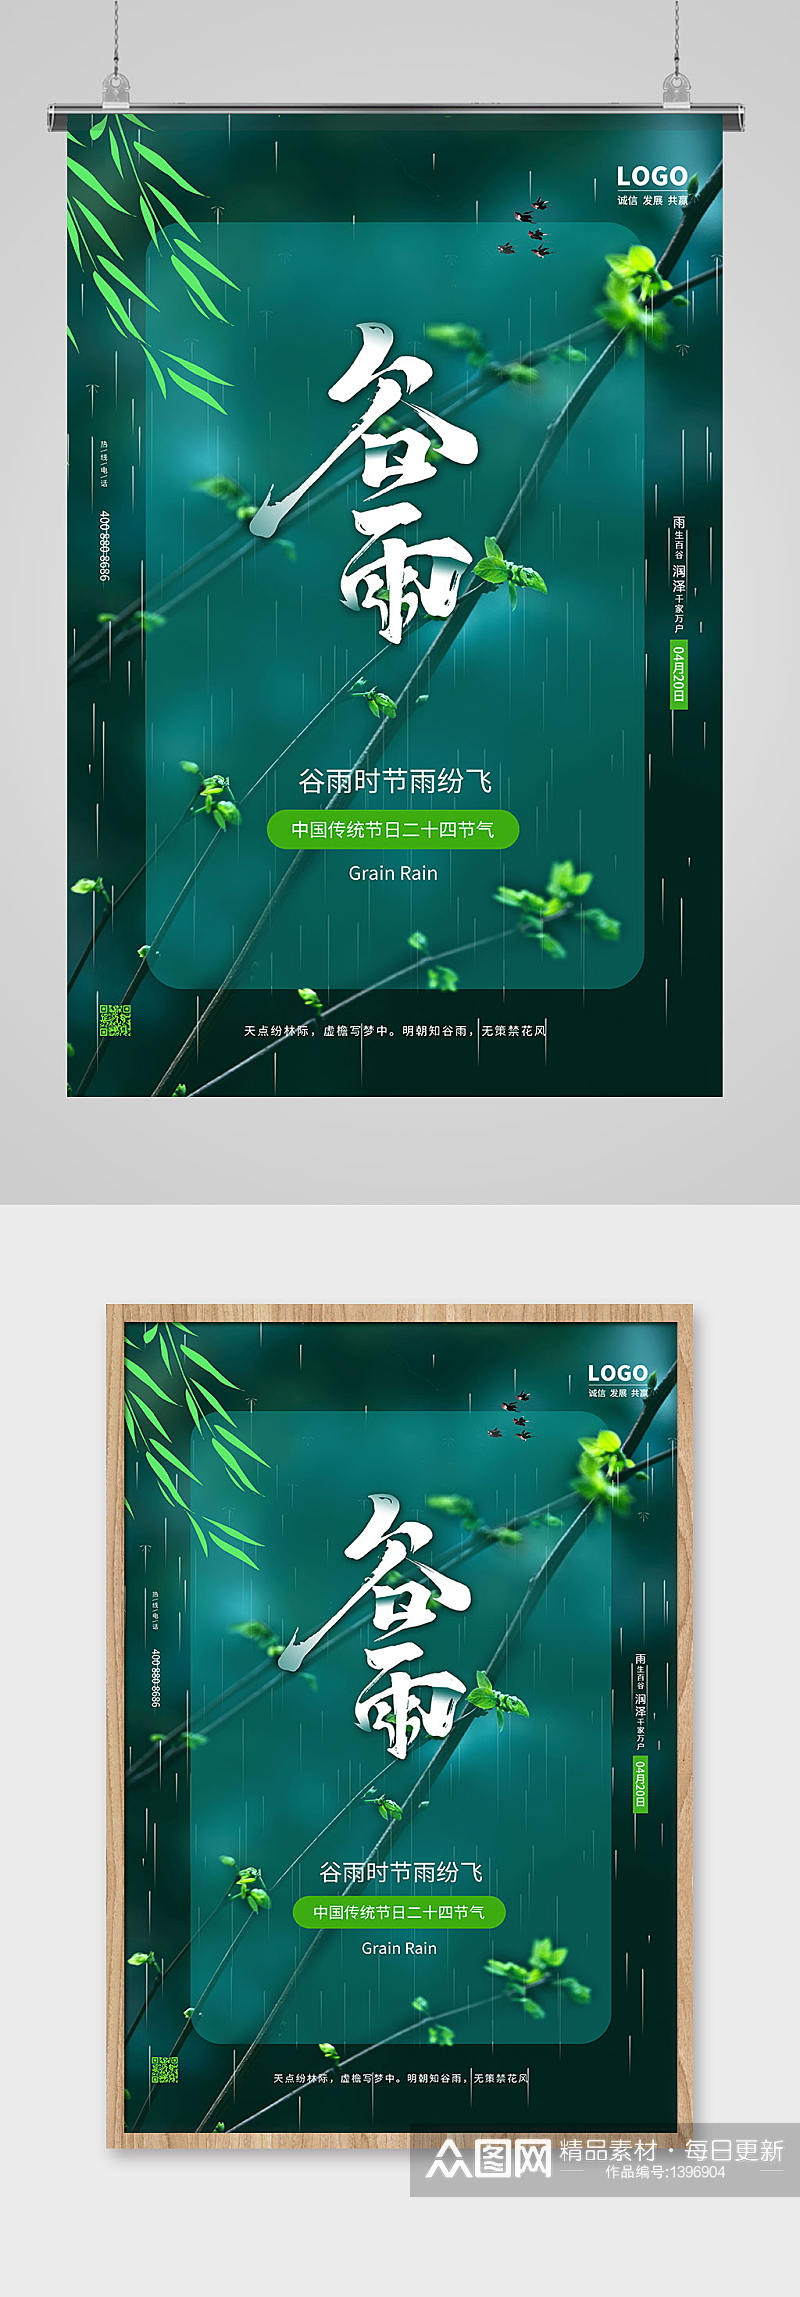 绿色中国传统节日二十四节气谷雨海报设计素材